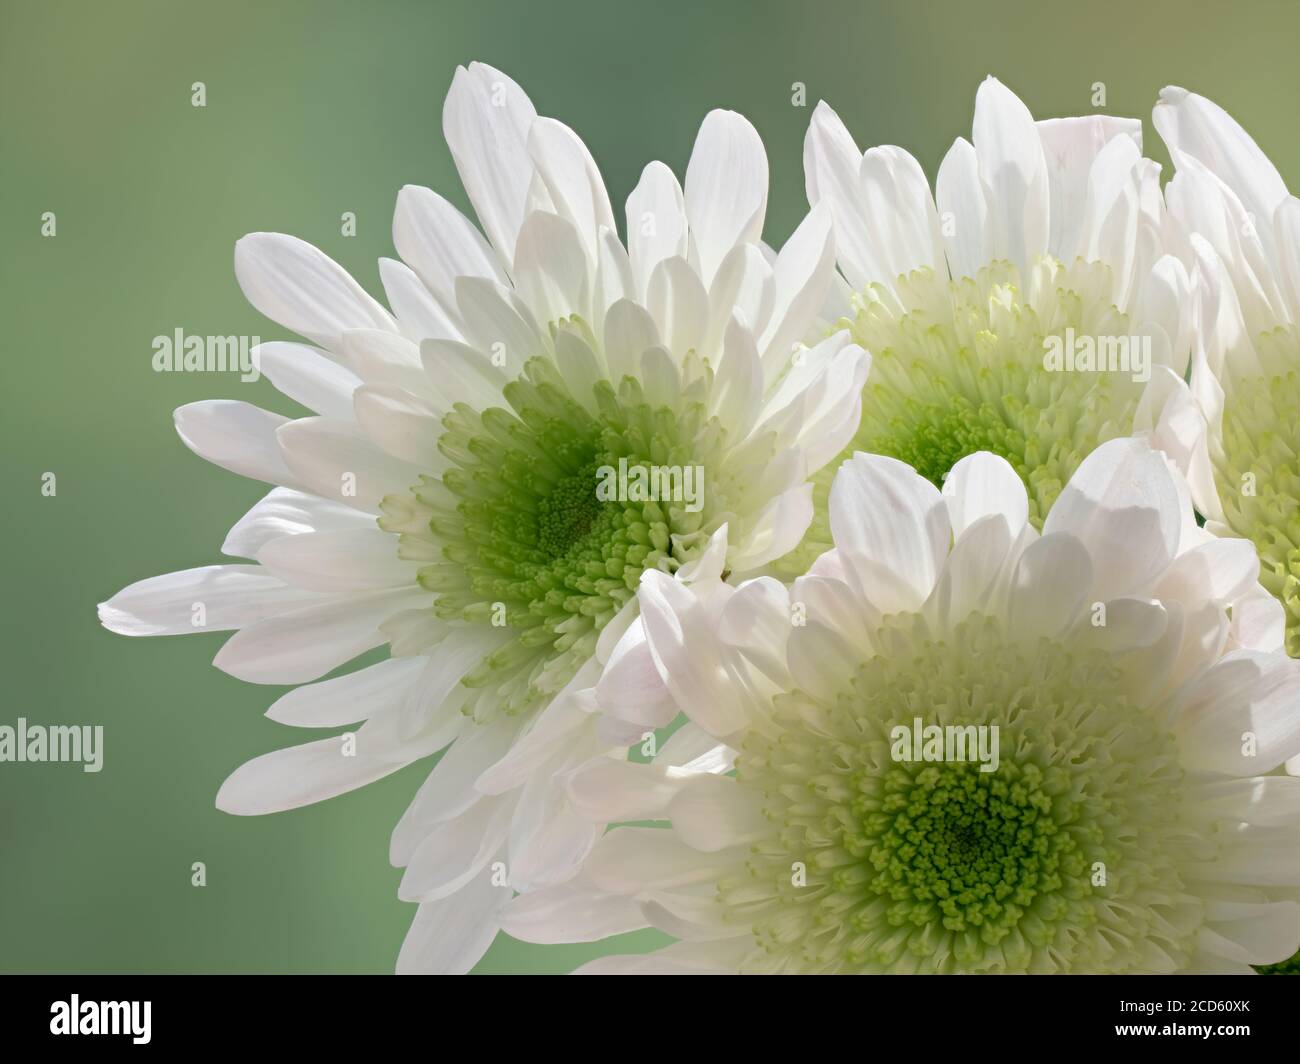 Close-up of white chrysanthemum flowers Stock Photo